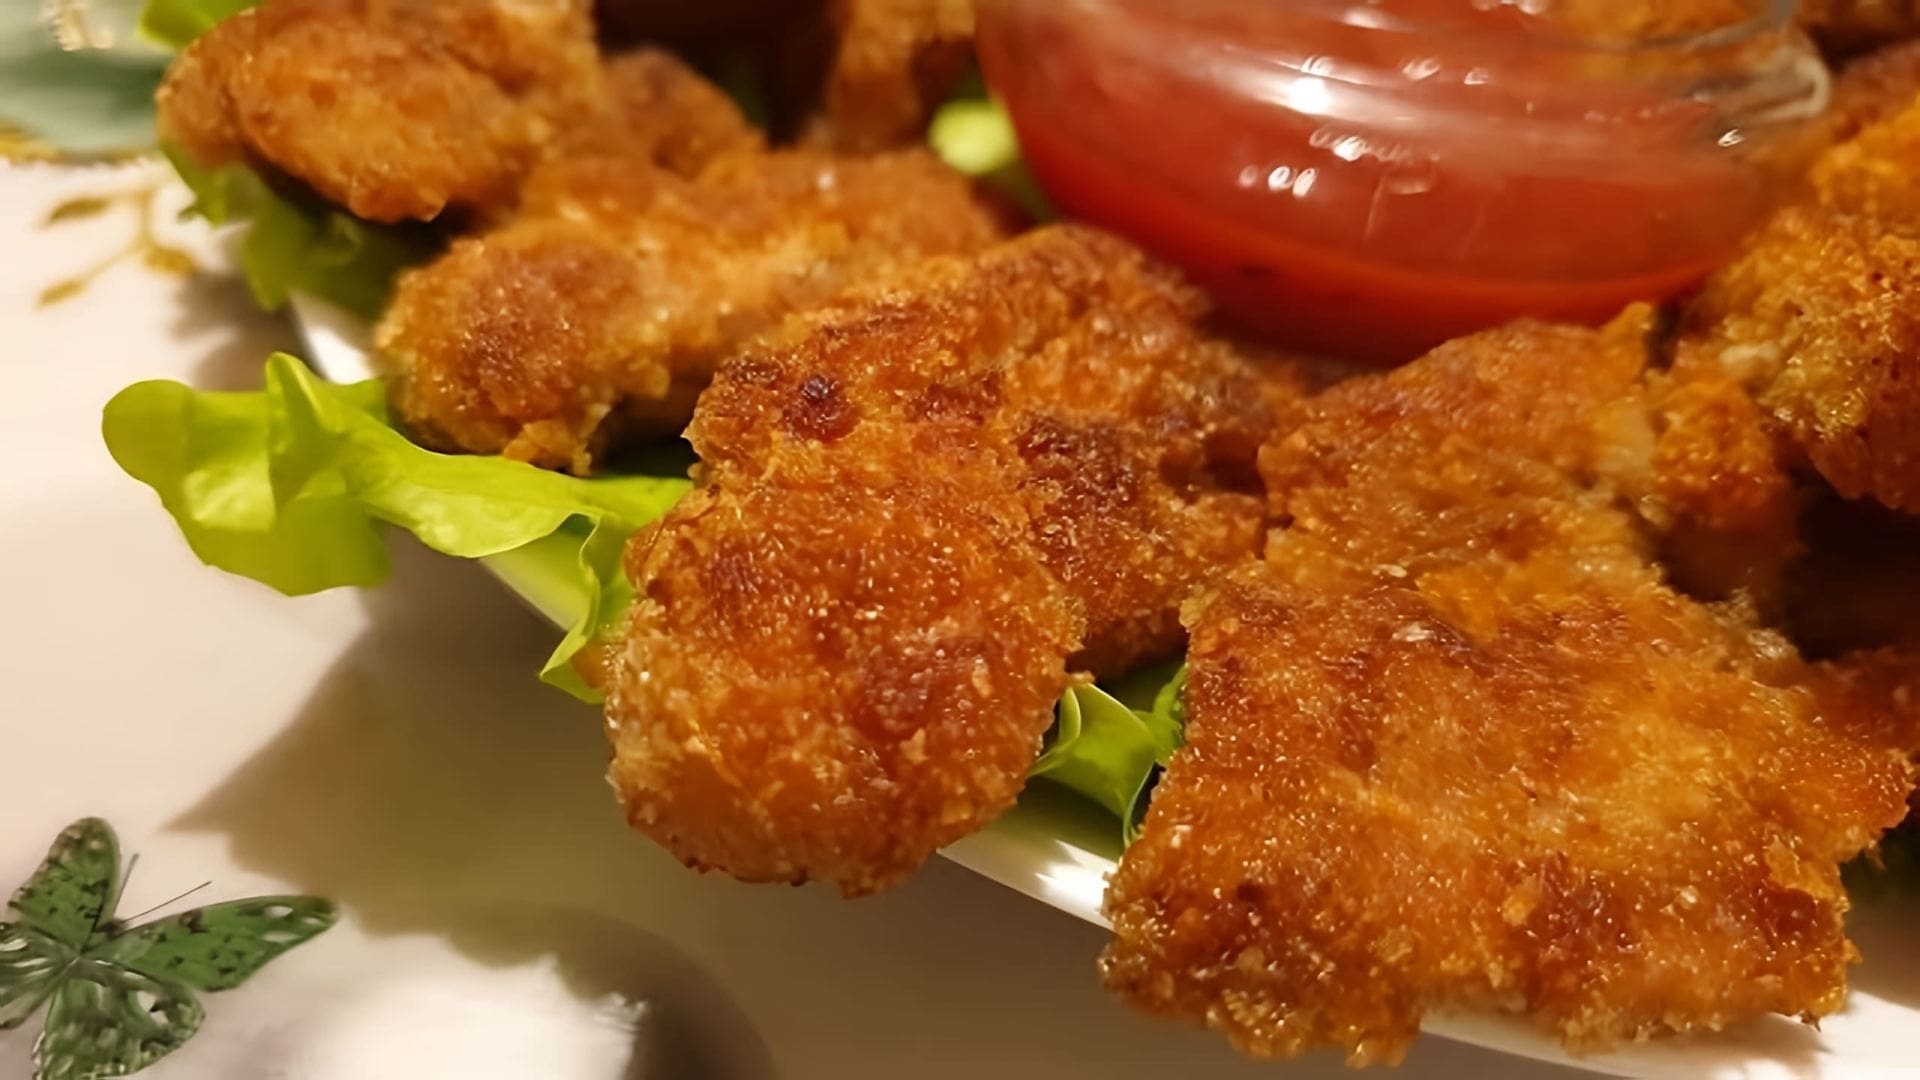 В этом видео демонстрируется процесс приготовления куриных наггетсов, которые по вкусу напоминают те, что подают в KFC